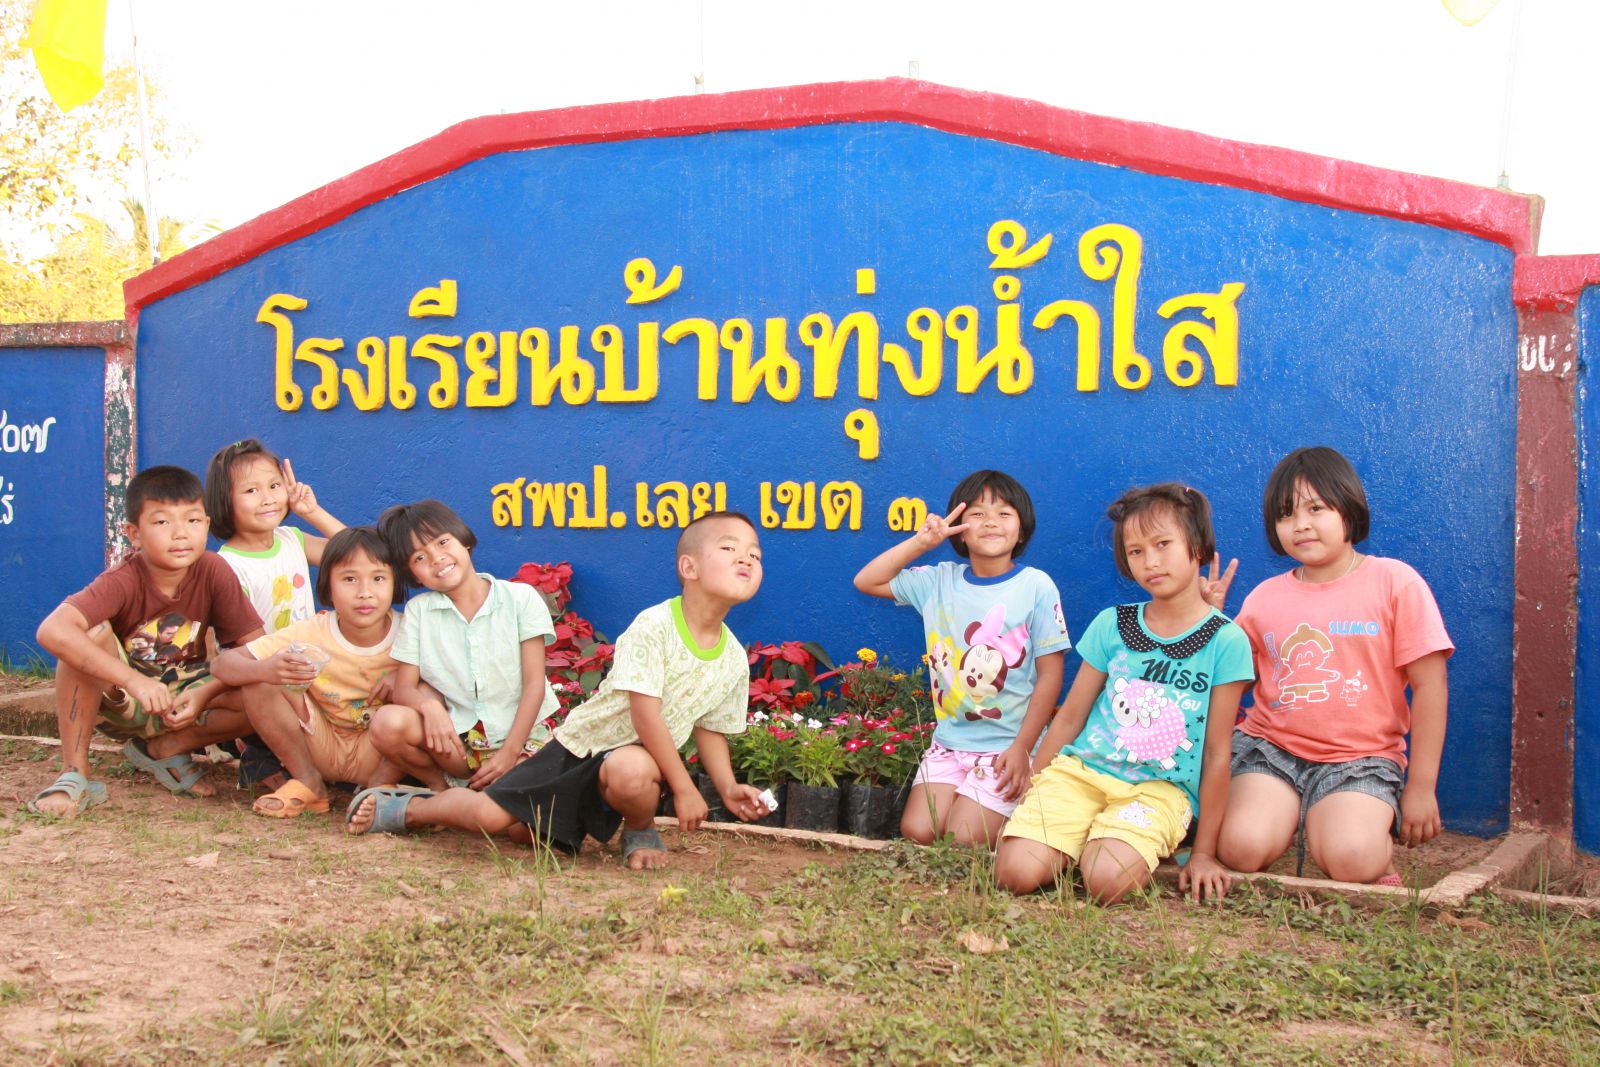 Thai children dream project No.9 / Loei Province